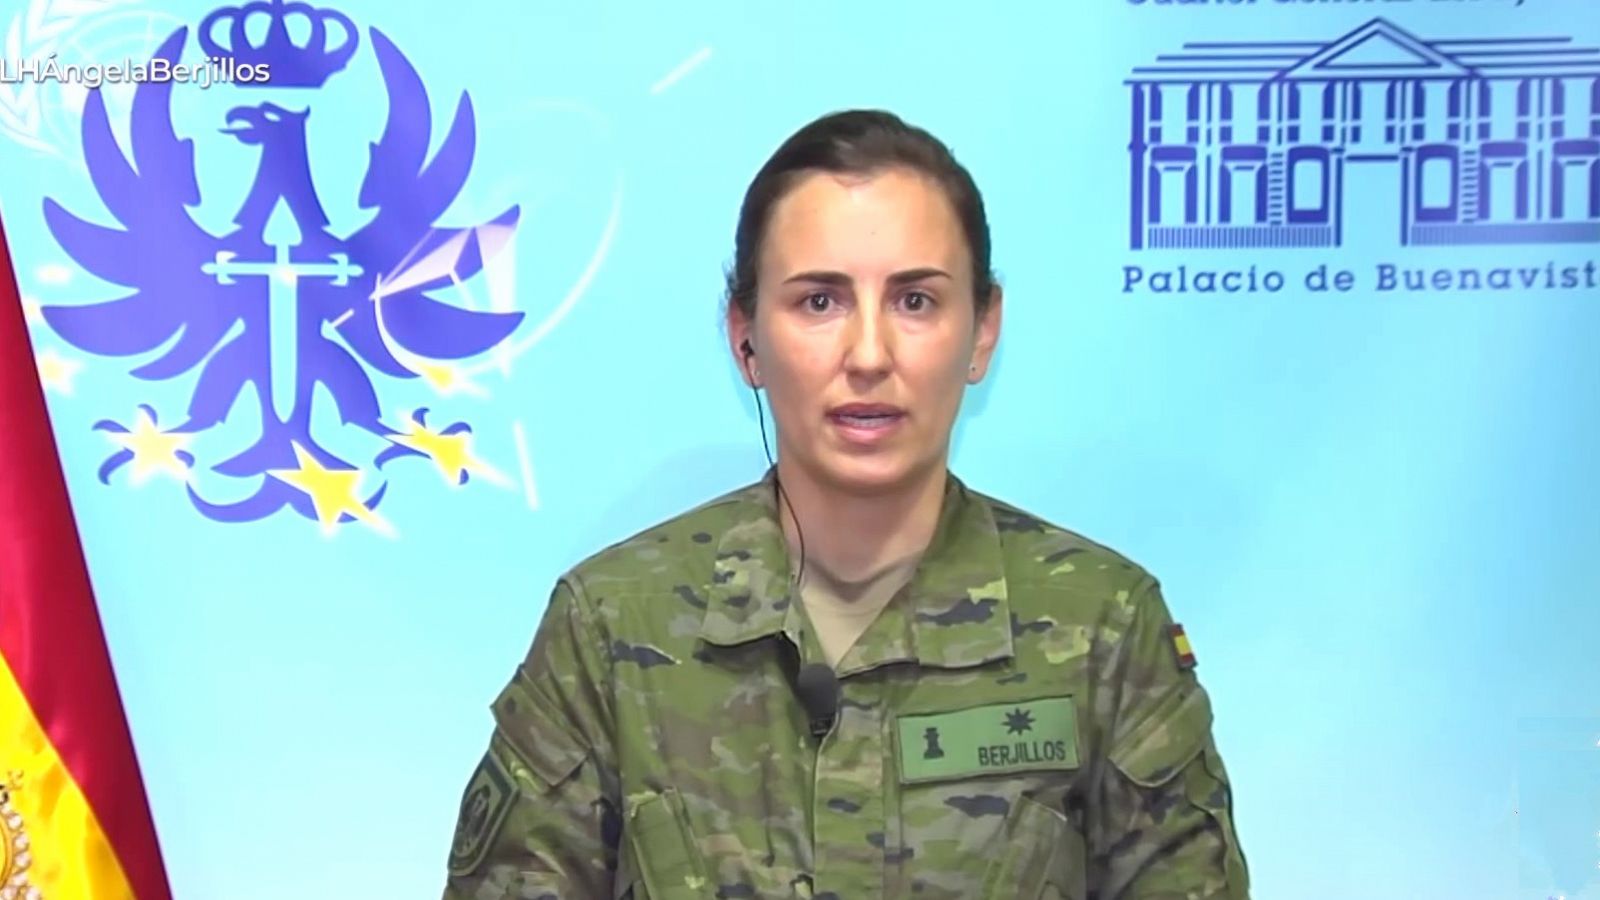 Comandante Ángela Berjillos: "Las FFAA es una institución integradora"